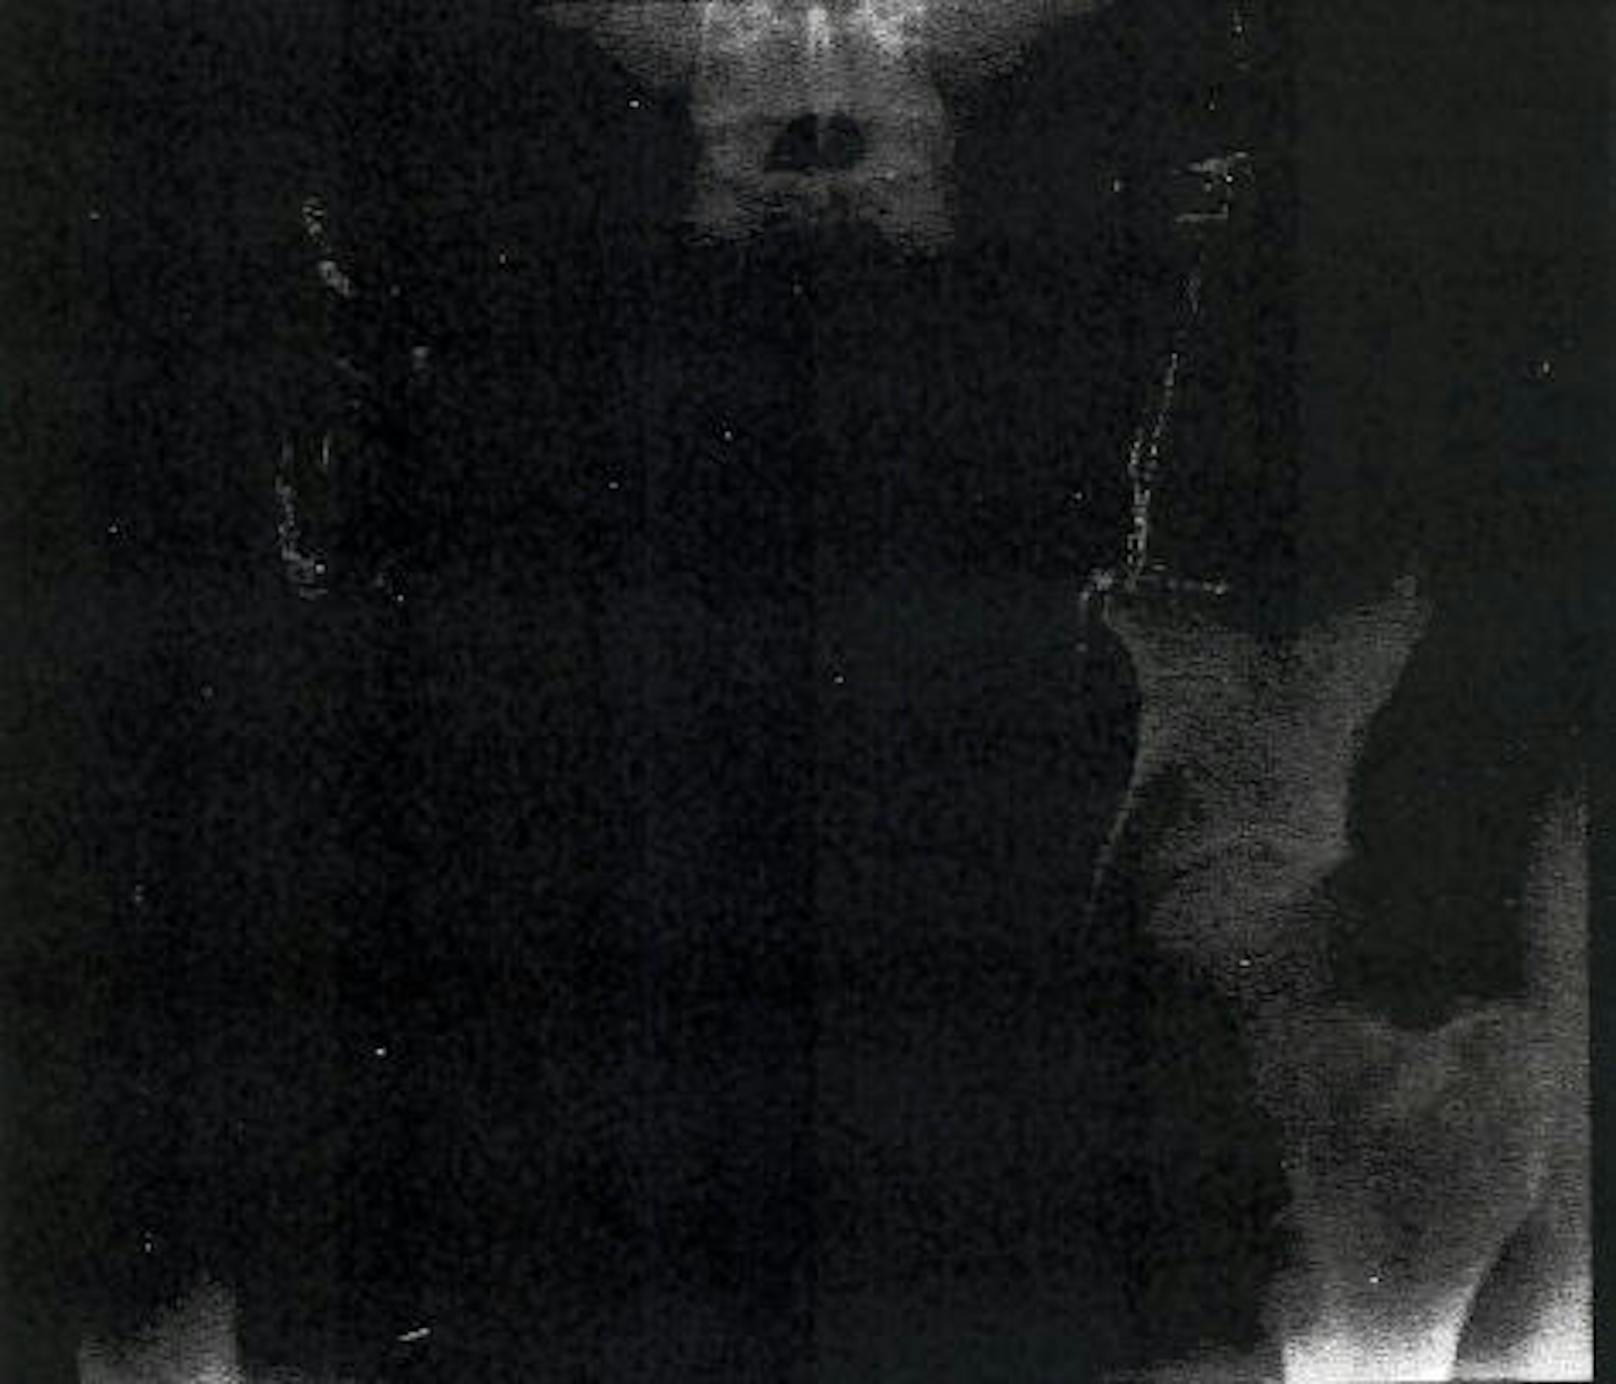 Röntgenaufnahme des Beckens am 29.5.2013. (Bereits damals wurde eine Untersuchung in Pakistan durchgeführt.)